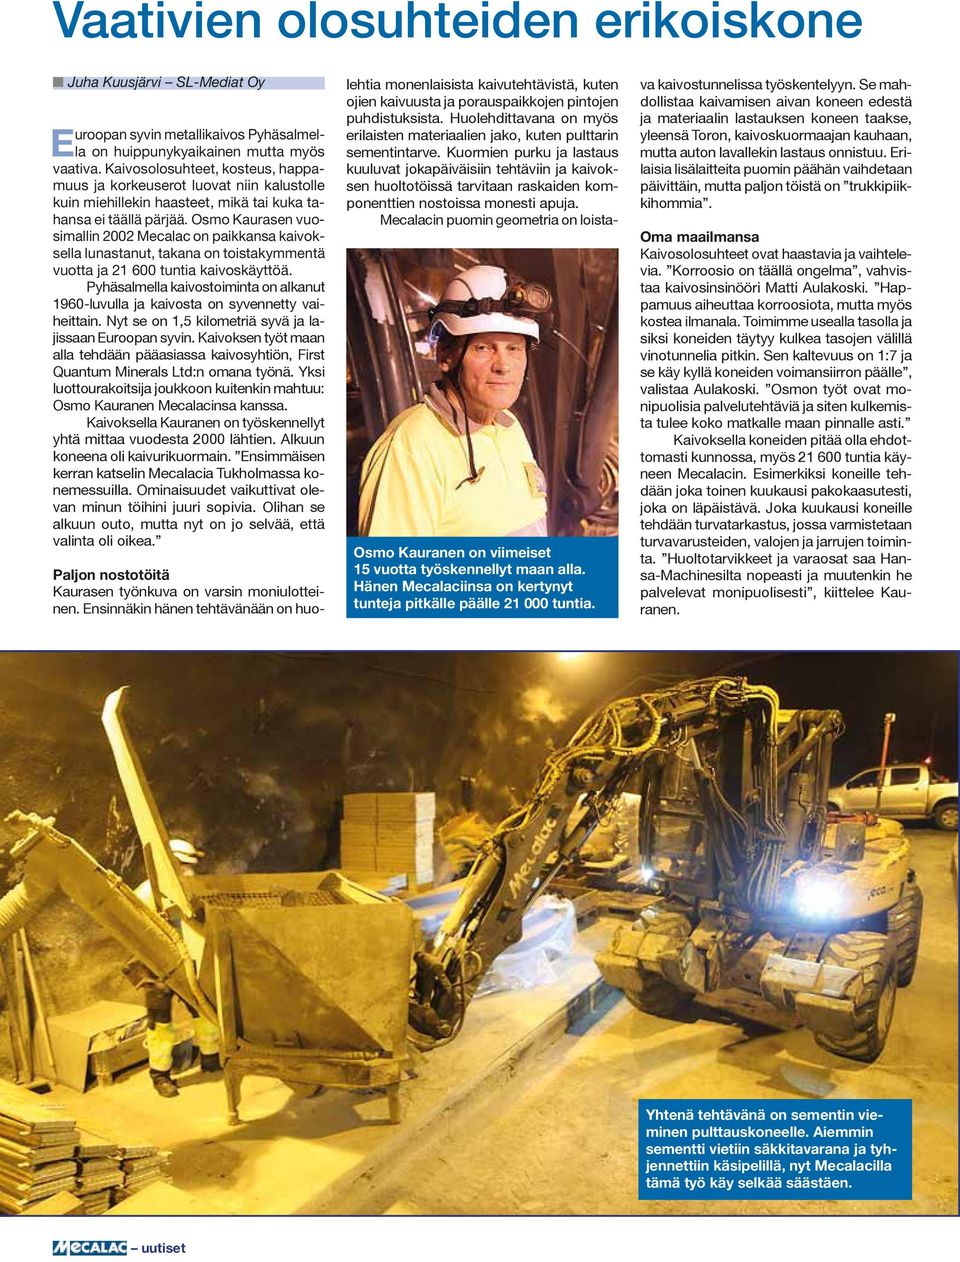 Osmo Kaurasen vuosimallin 2002 Mecalac on paikkansa kaivoksella lunastanut, takana on toistakymmentä vuotta ja 21 600 tuntia kaivoskäyttöä.